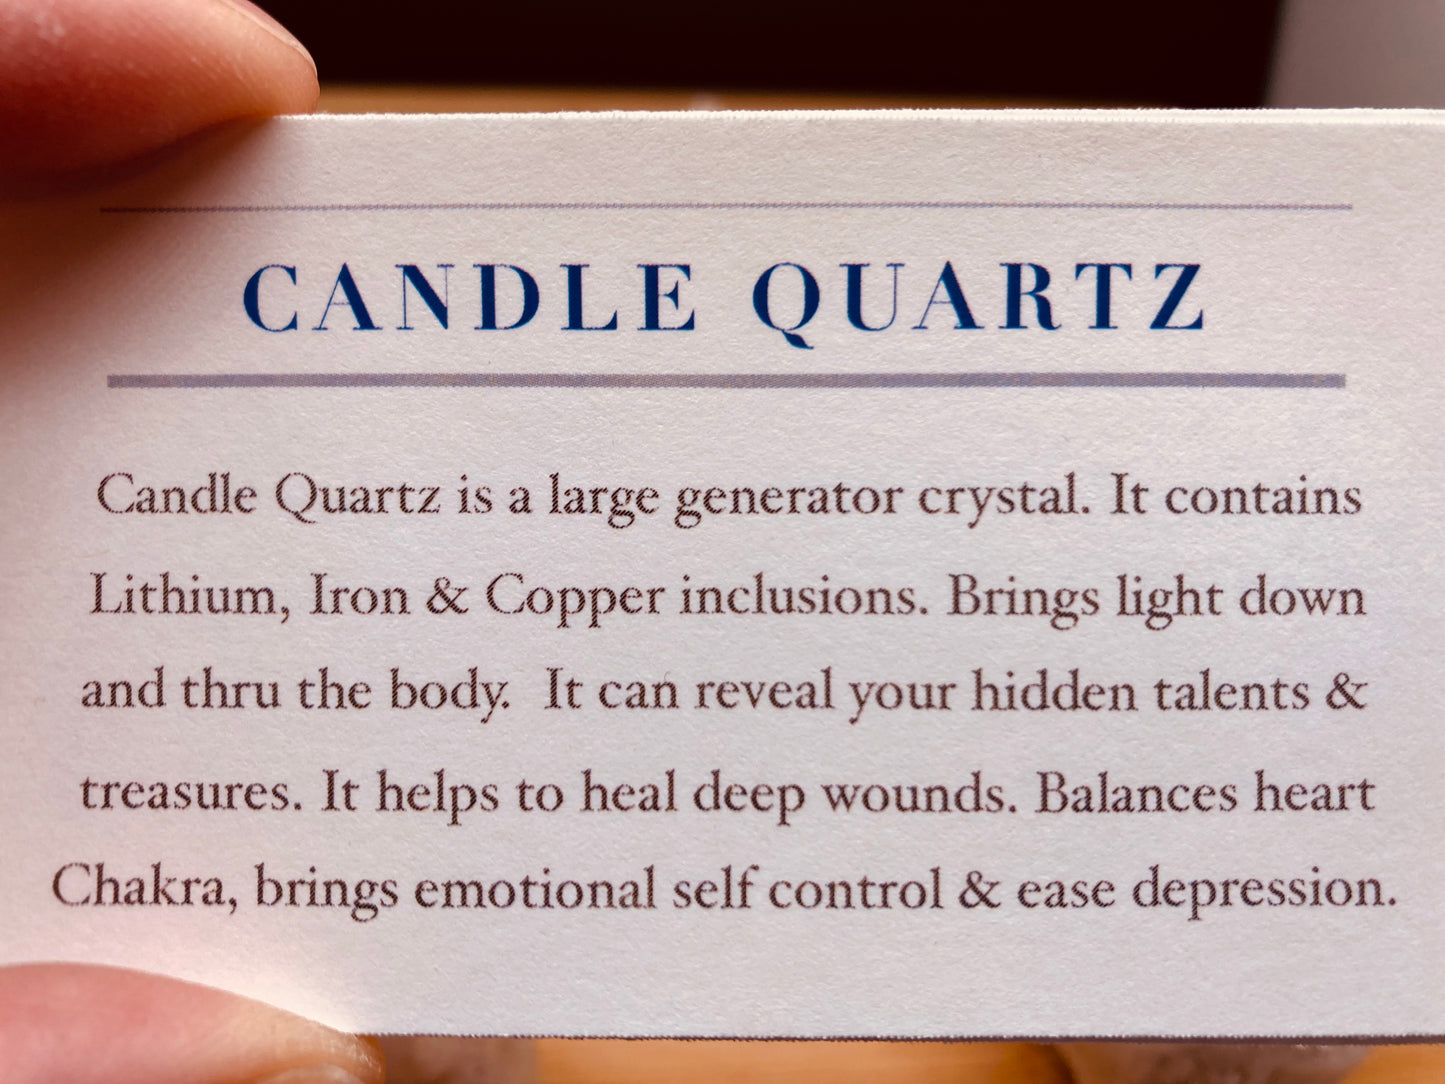 Candle Quartz